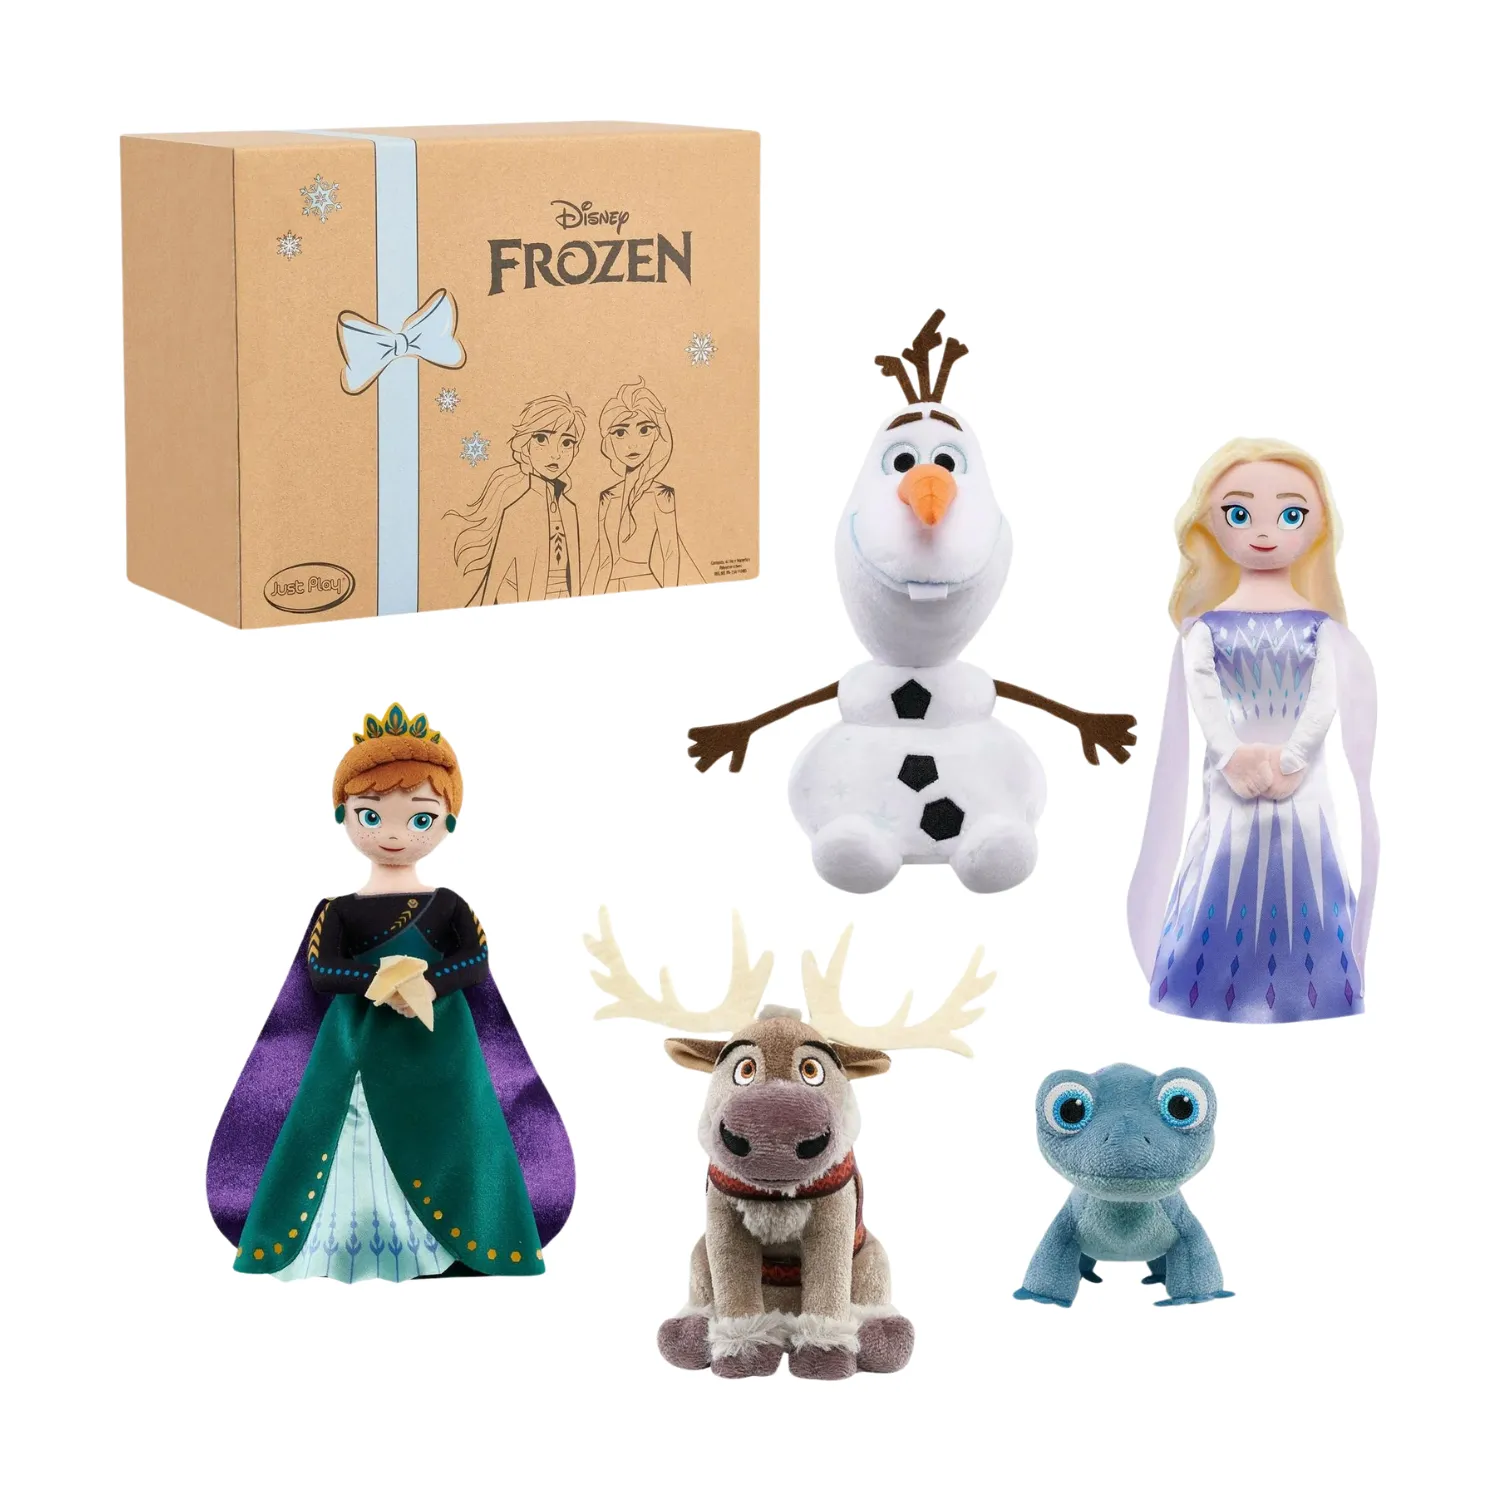 Cet image montre cinq poupées en peluche de personnages de Frozen II, dont Anna, Elsa, Olaf, un lézard et Sven.